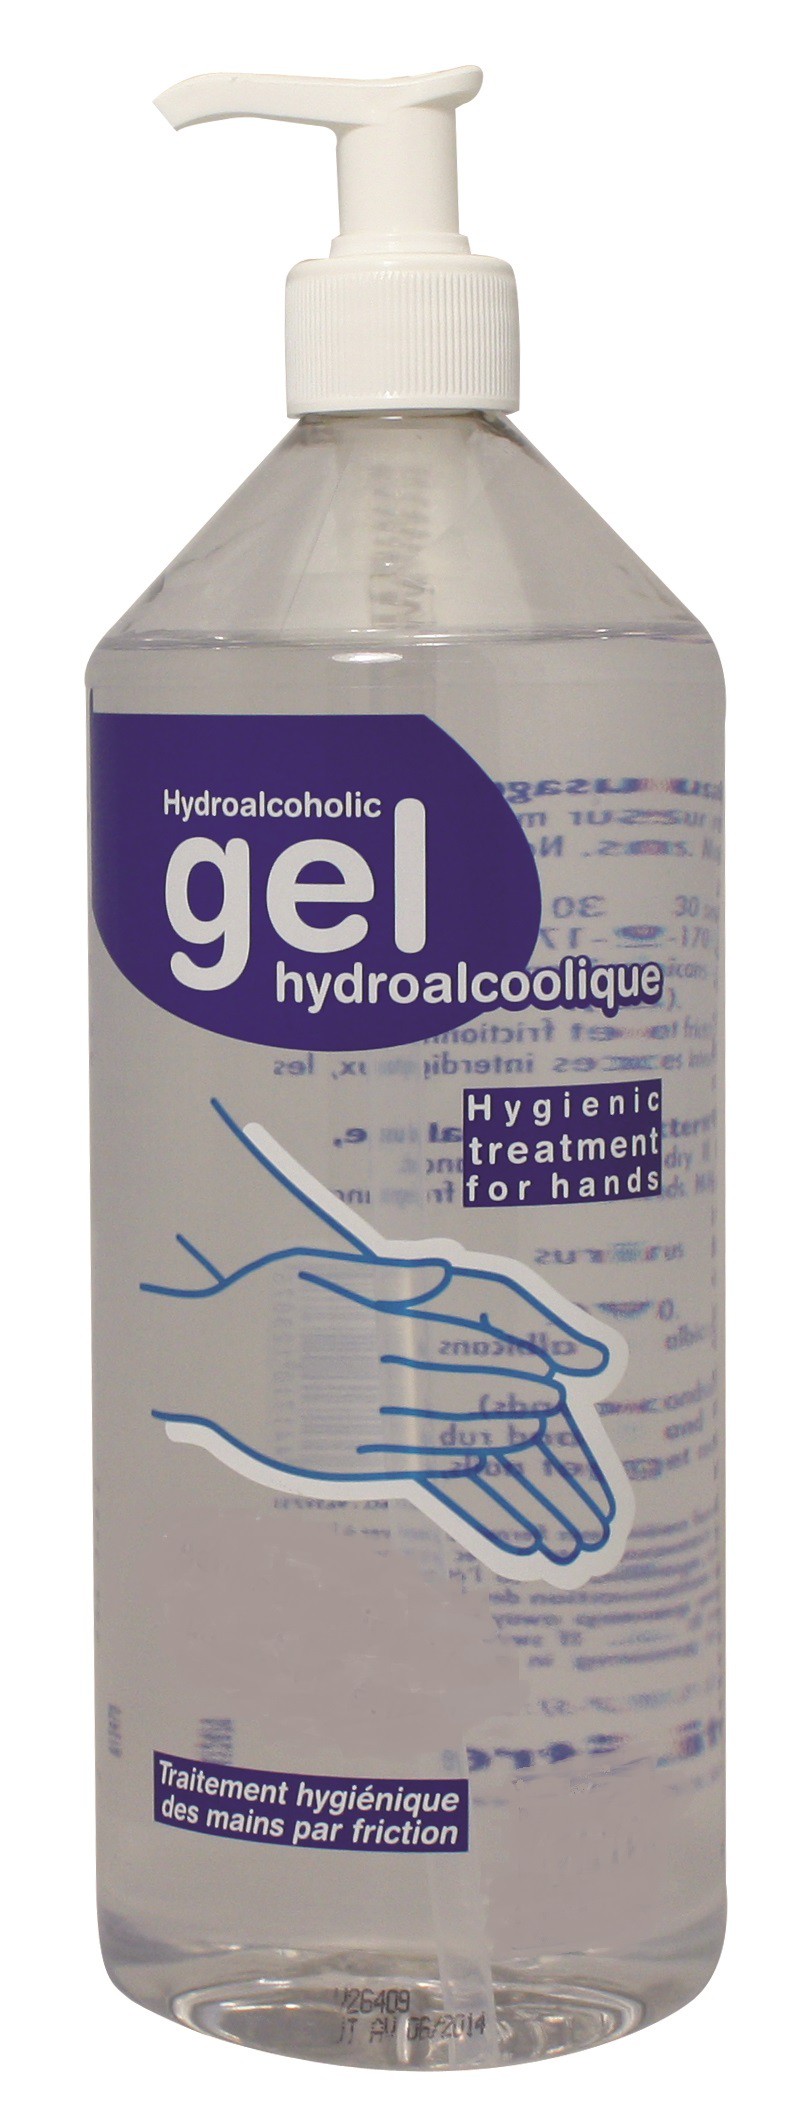 ORLAV - Eligel A - Gel désinfectant hydroalcoolique avec pompe - 1L